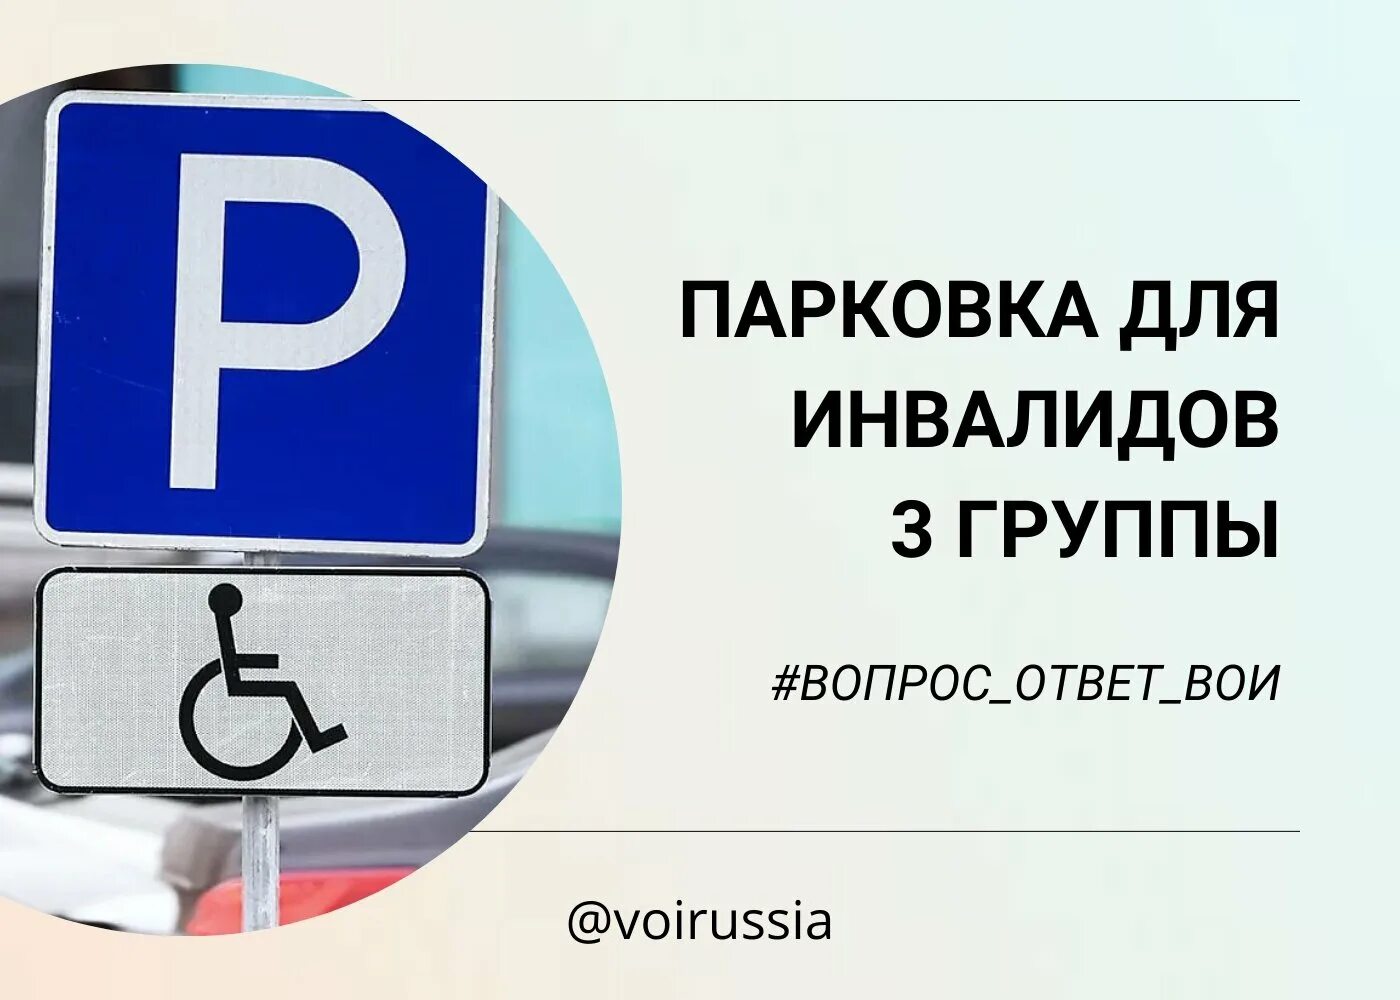 Можно ли инвалидам парковаться на платных. Stayanka dilya invalit. Инвалидная парковка. Знак инвалидной парковки. Дорожный знак парковка для инвалидов.